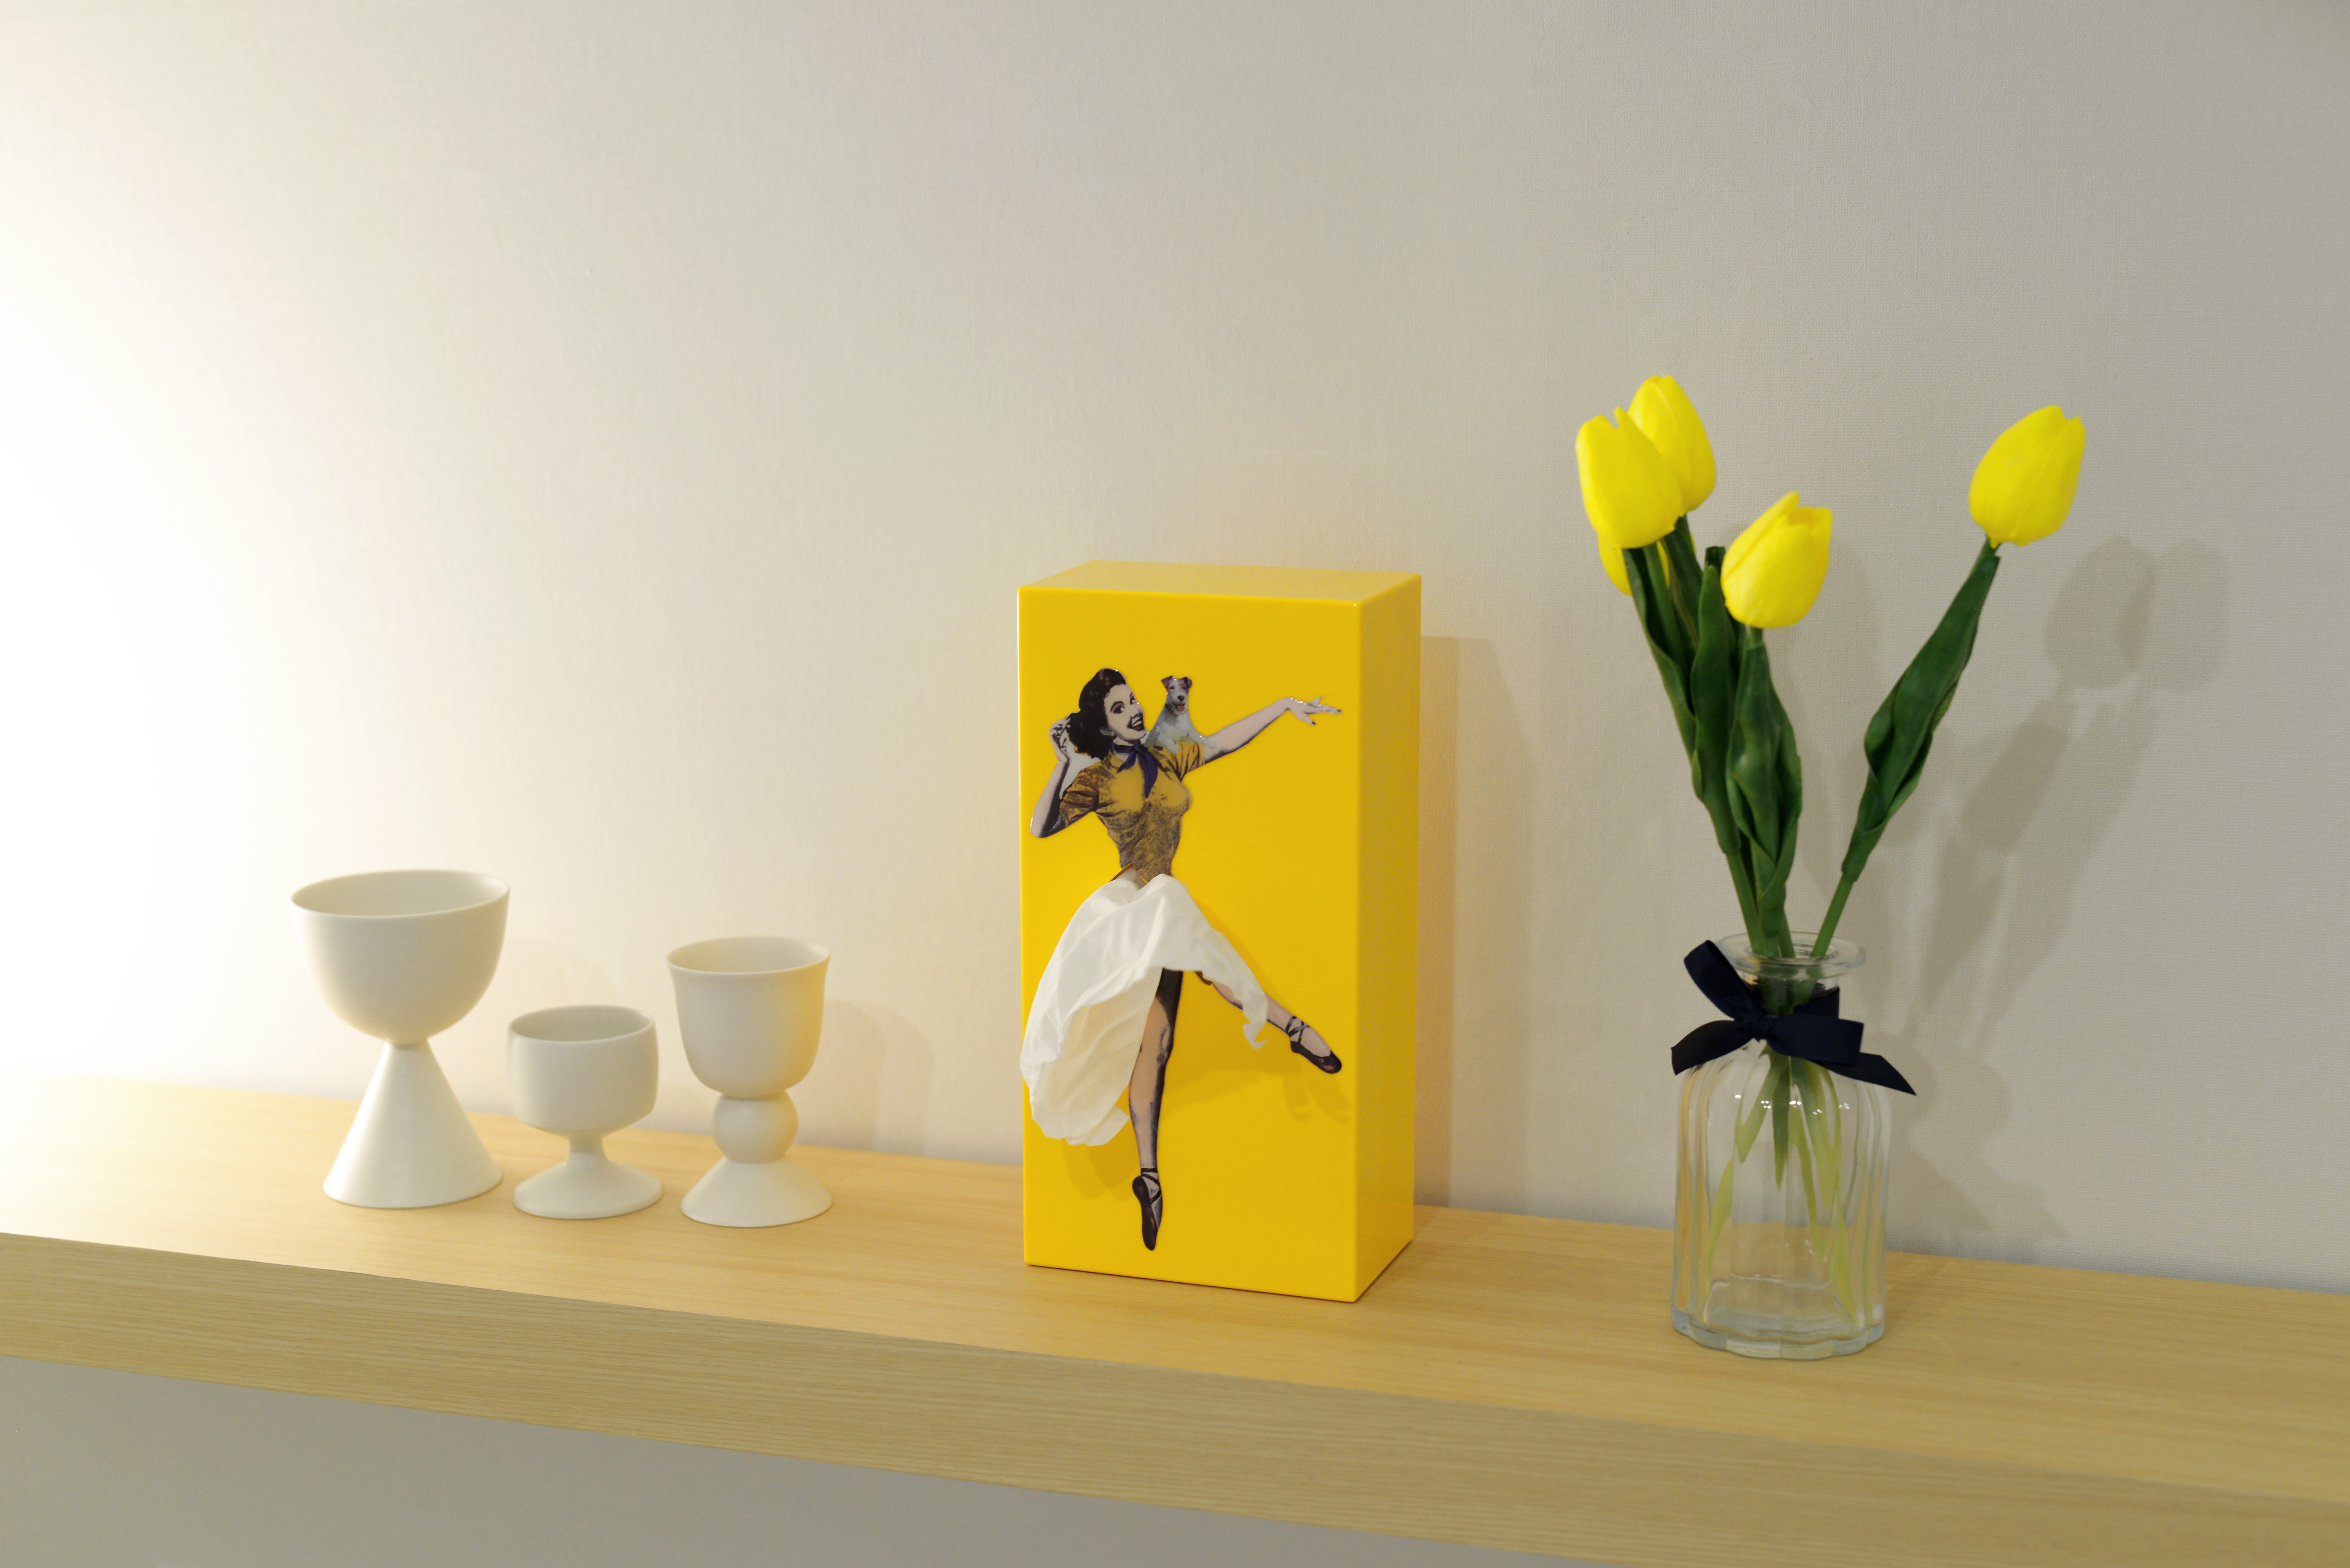 韓國 SPEXTRUM 蓬蓬裙女郎造型面紙盒(黃色)